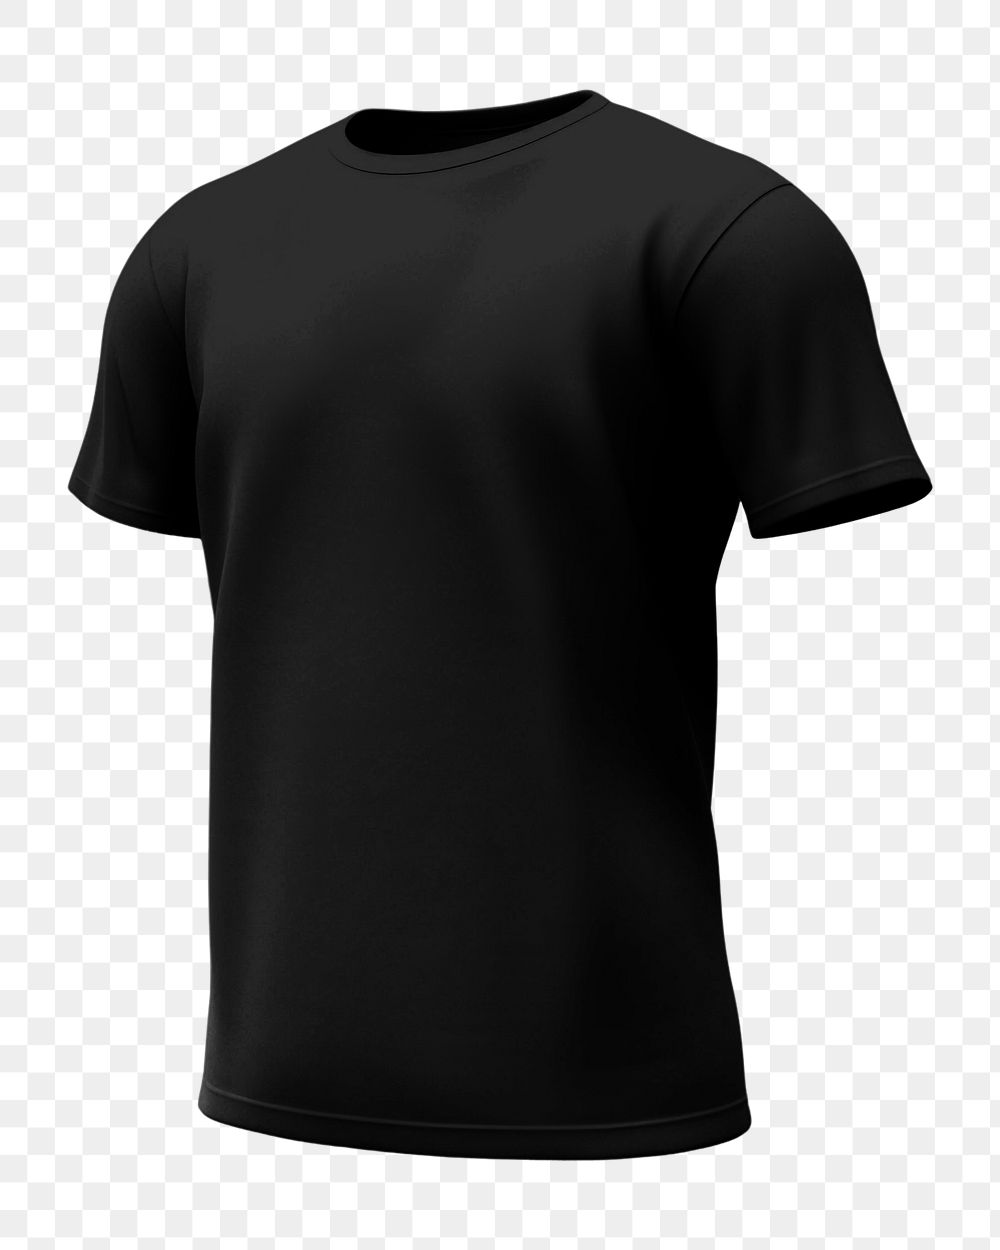 Black t-shirt png, transparent background